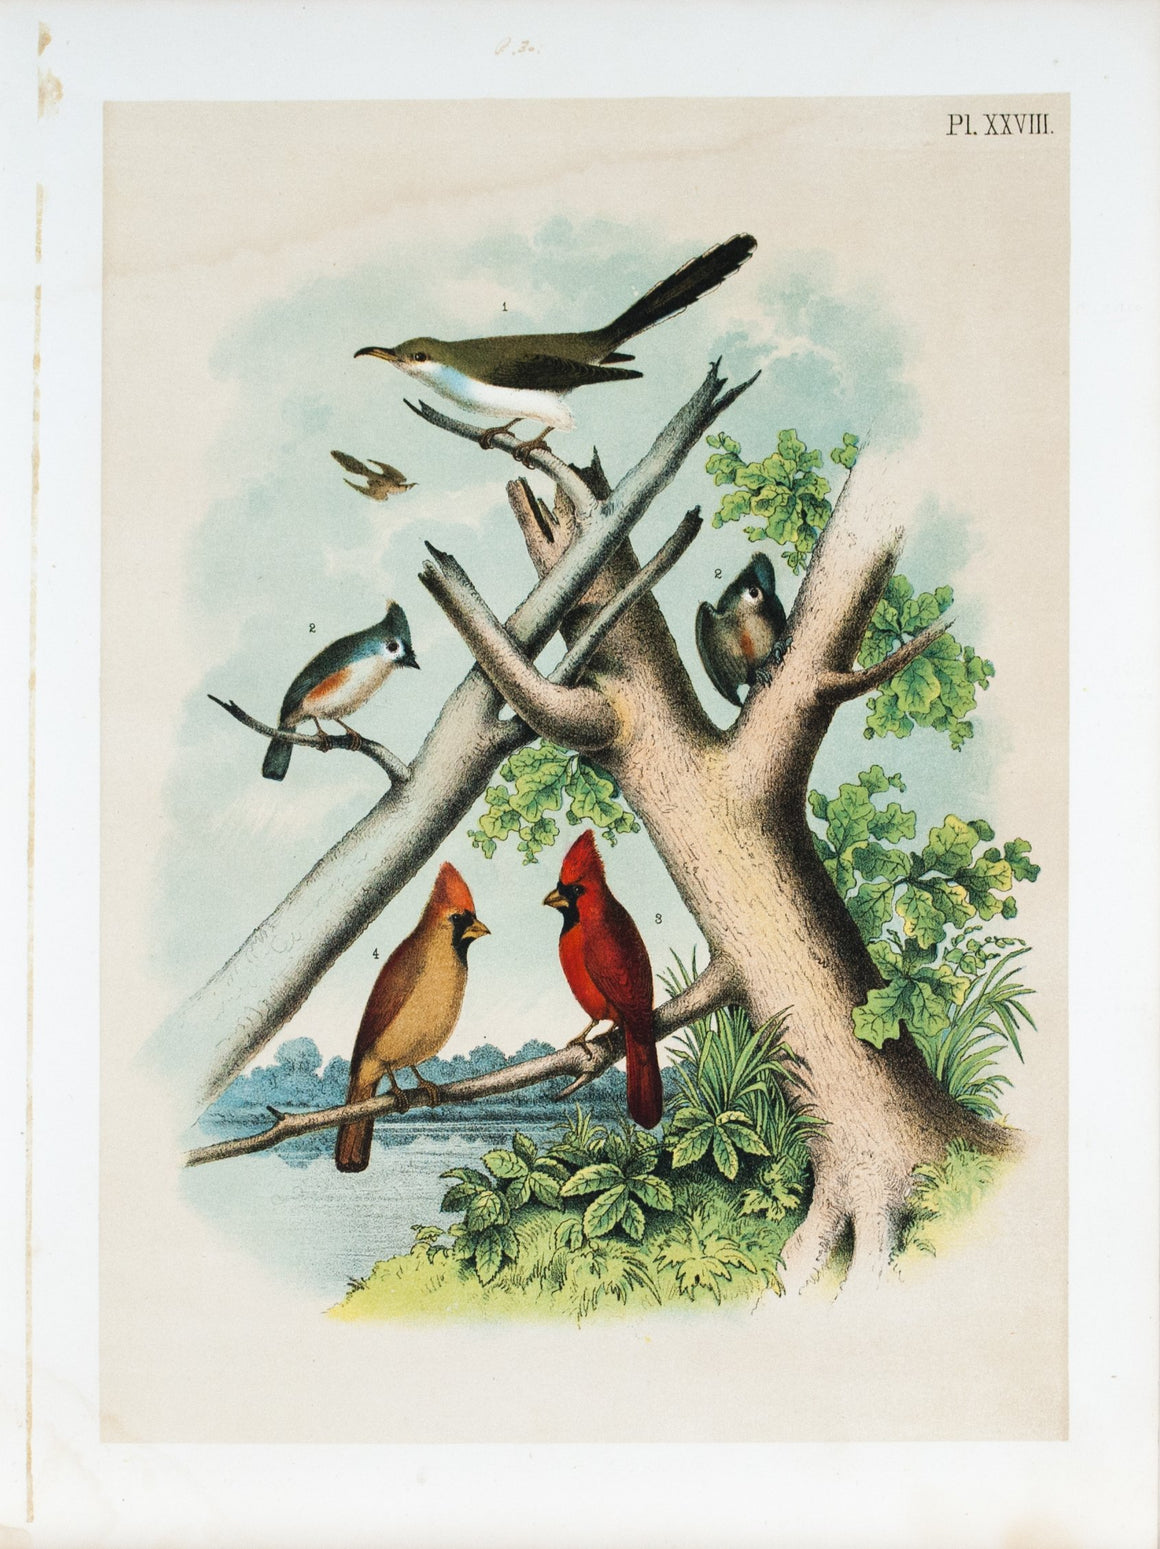 Cardinal Grosbeak Cuckoo Titmouse Antique Bird Print 1878